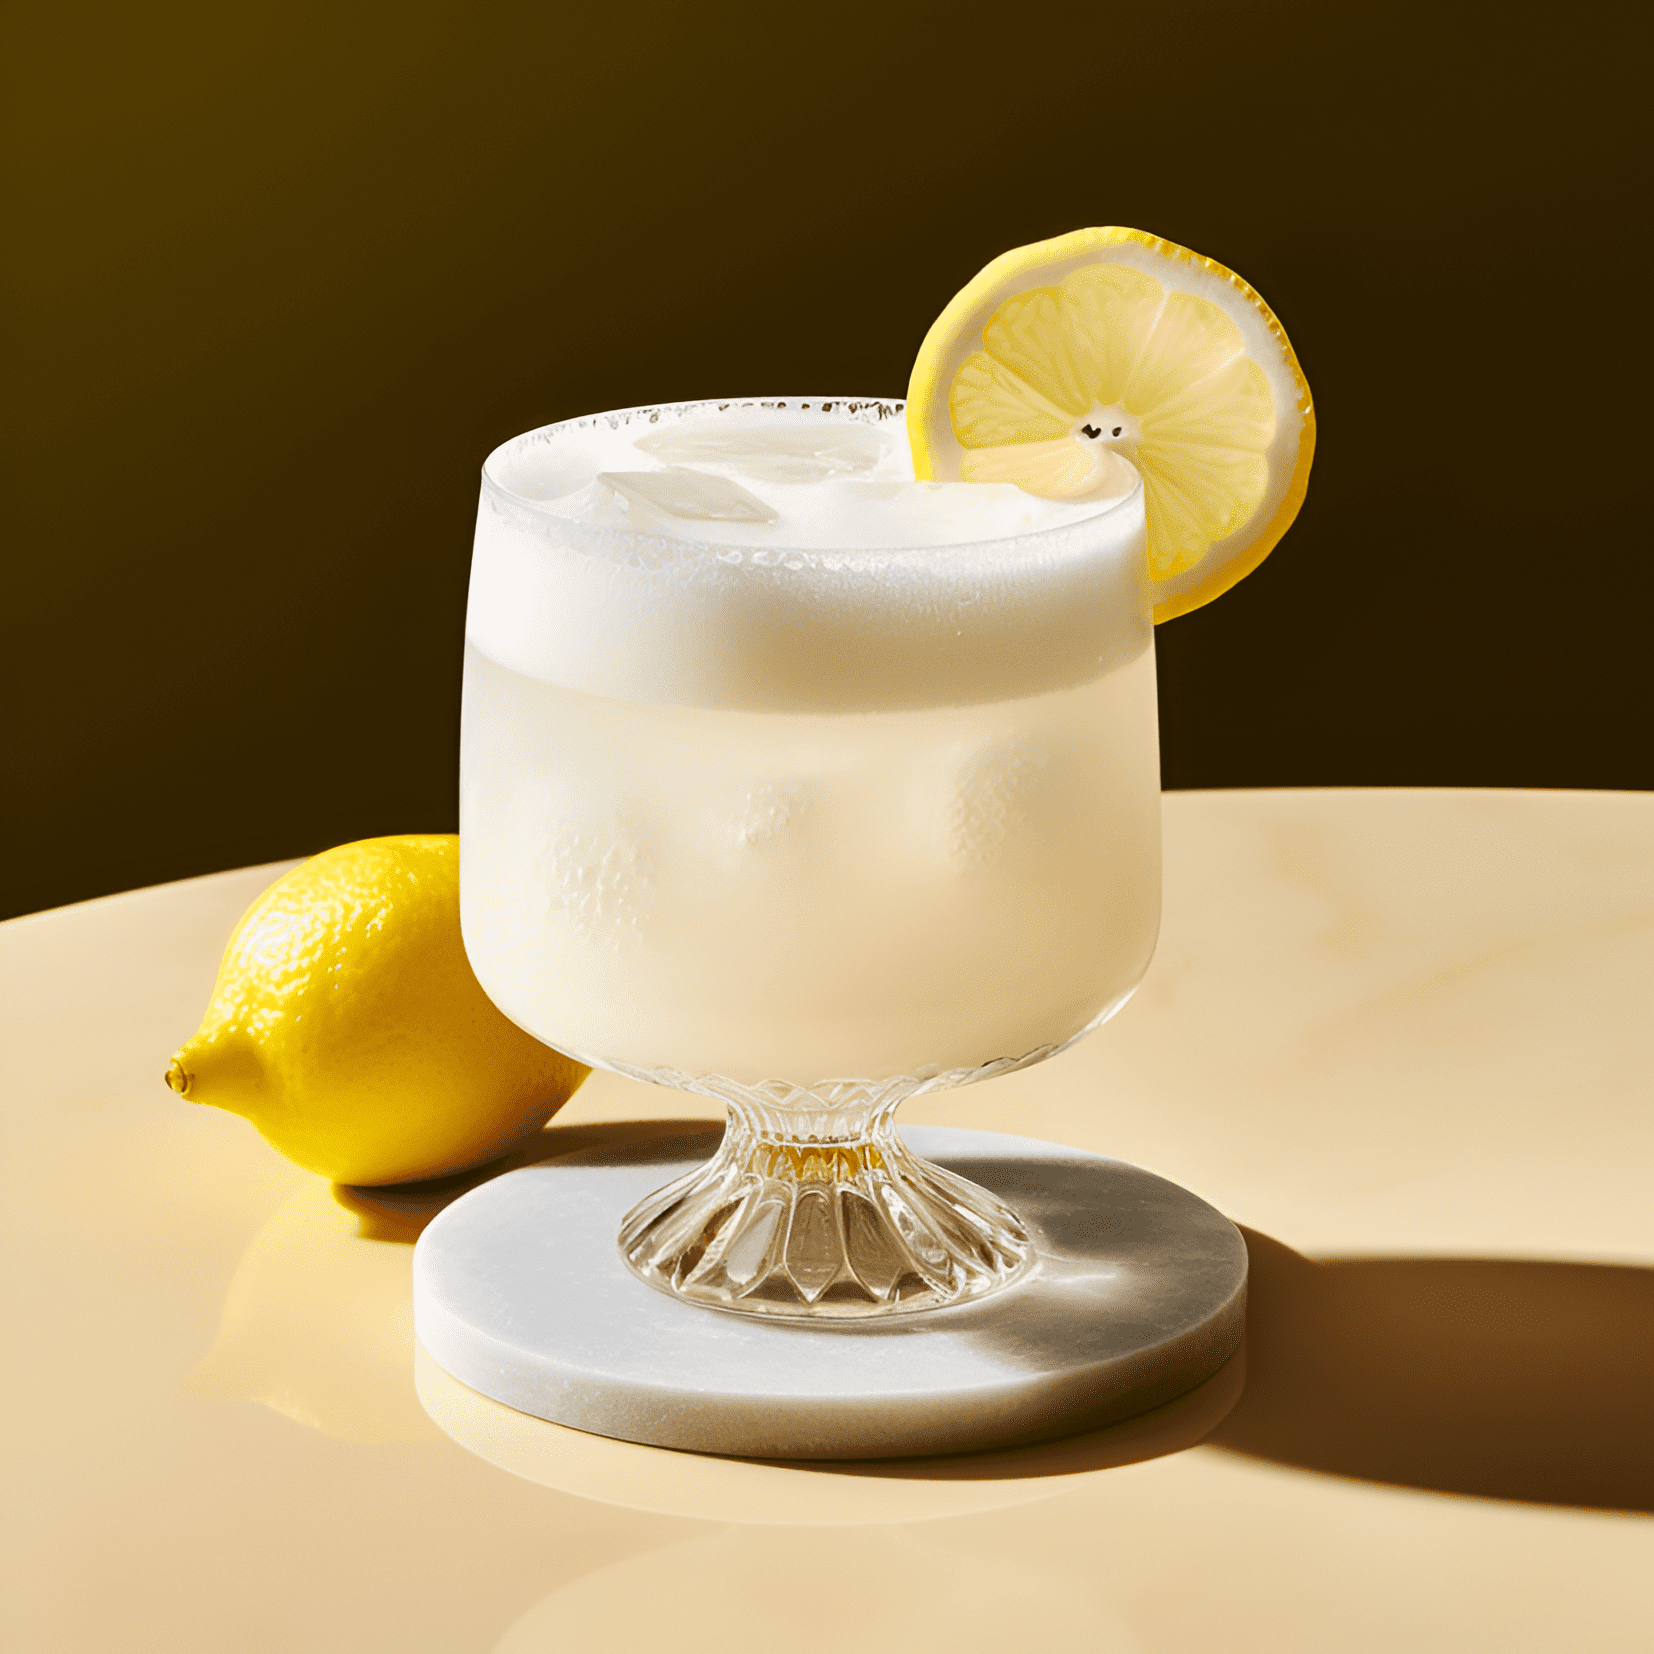 Gin Sour Cóctel Receta - El Gin Sour es un cóctel refrescante, ácido y ligeramente dulce. La combinación de ginebra, jugo de limón y jarabe simple crea una bebida bien equilibrada que es tanto ácida como dulce, con un toque de sabores botánicos de la ginebra.